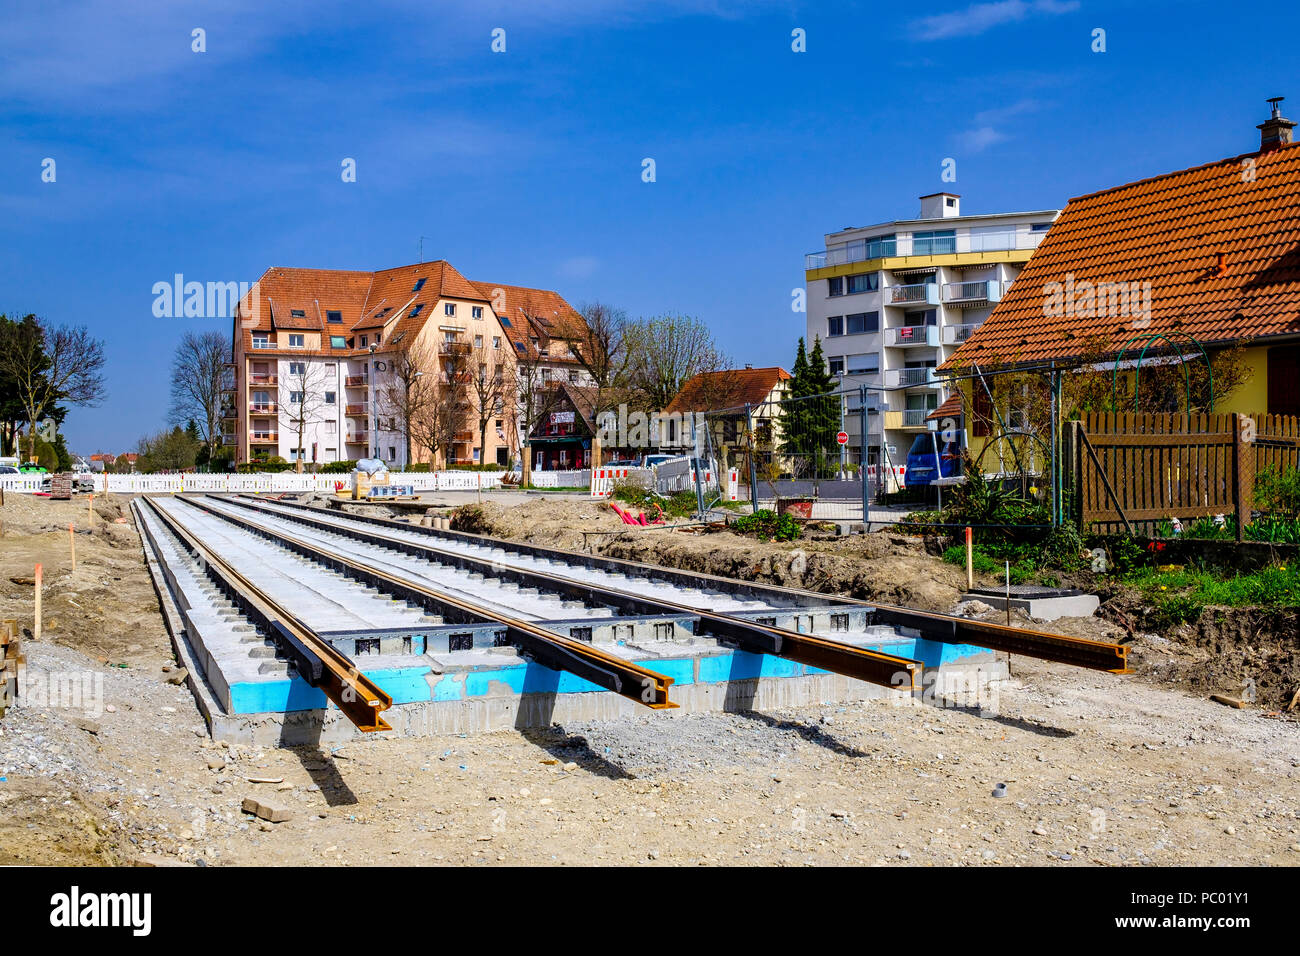 Strasburgo, tram sito in costruzione, binari ferroviari, letto in calcestruzzo, case, linea e estensione, Alsazia, Francia, Europa Foto Stock